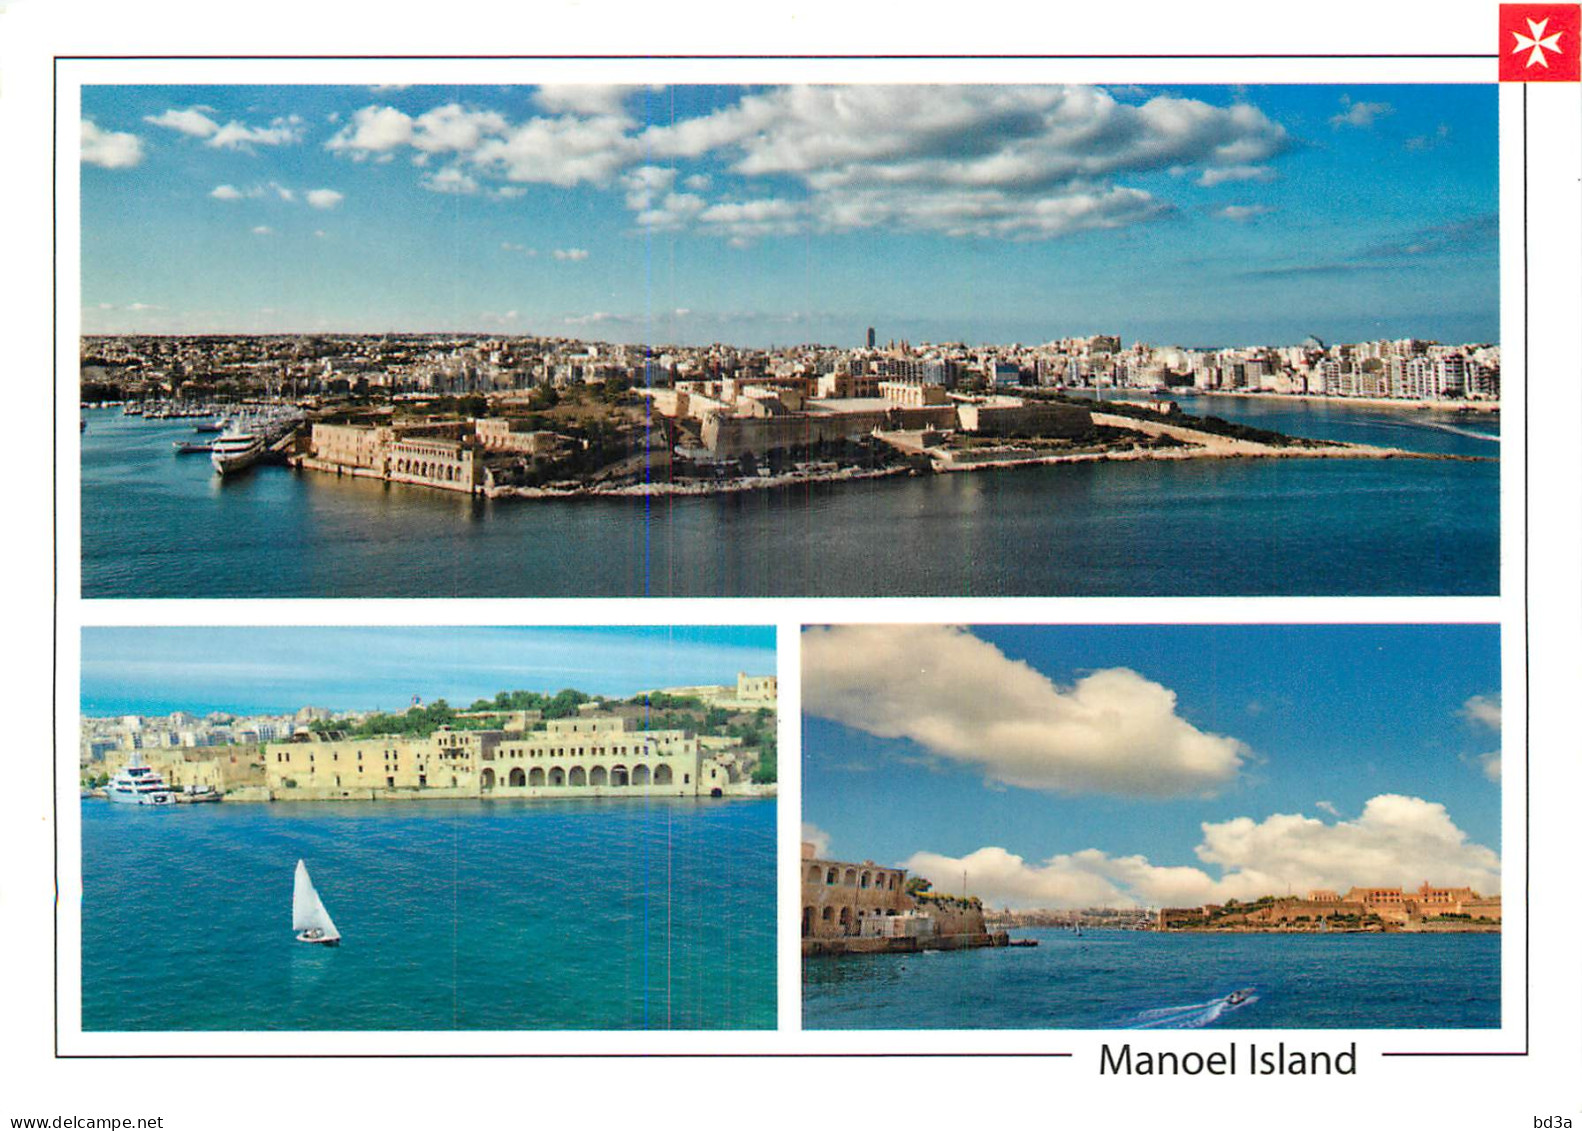  MALTE  MALTA  MANOEL ISLAND - Malta